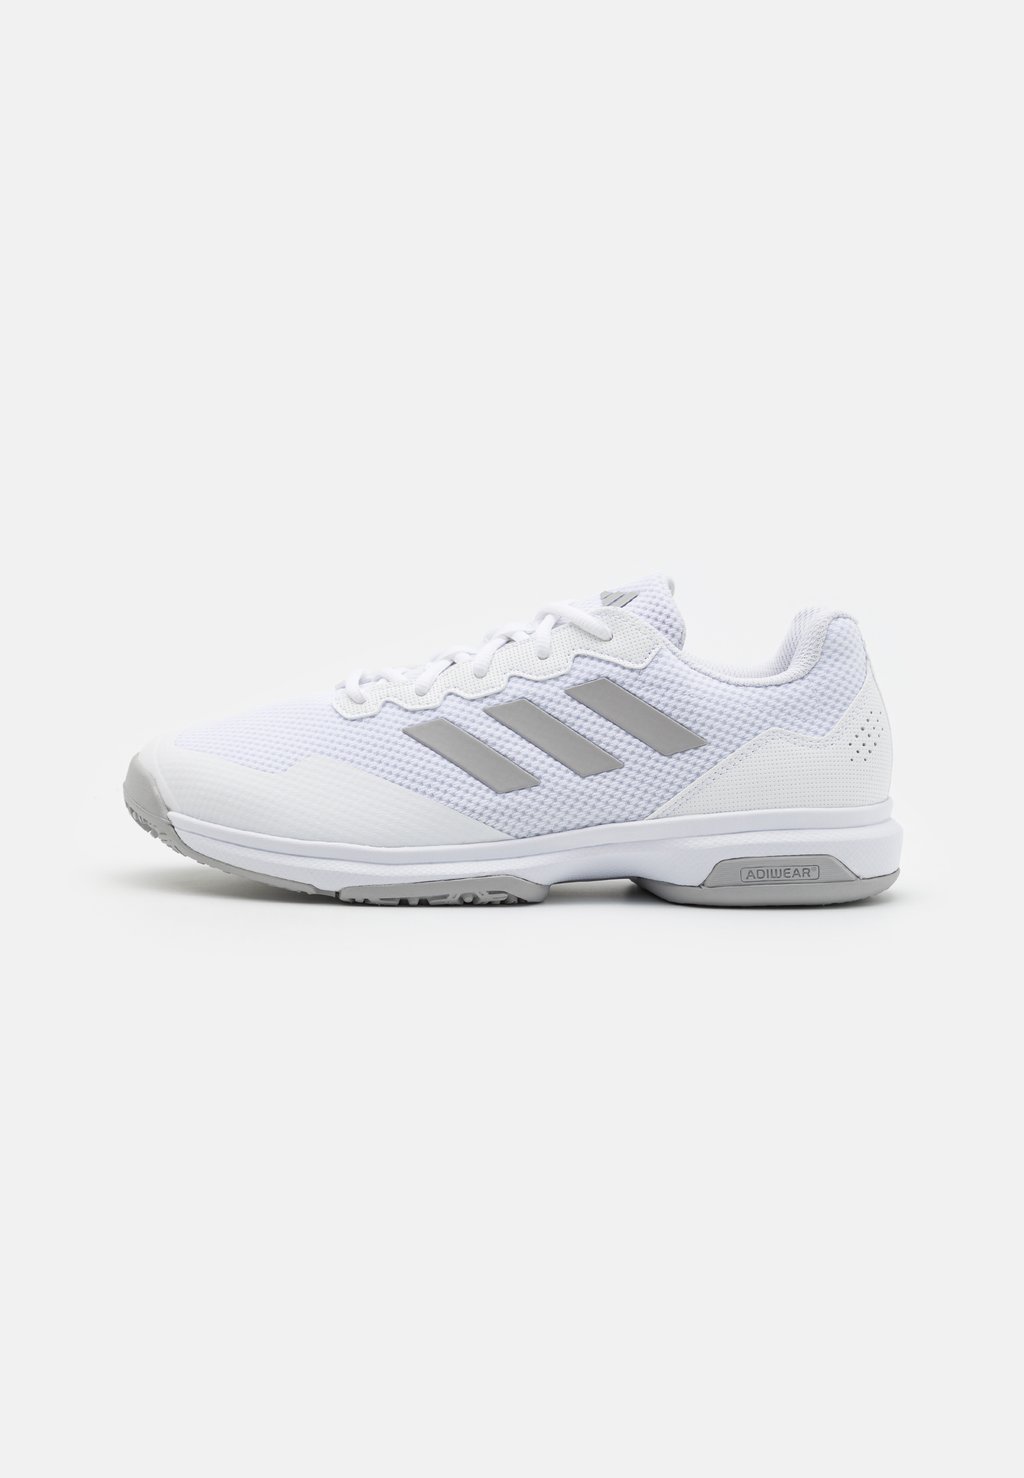 Теннисные туфли для всех поверхностей Gamecourt 2 Adidas, цвет footwear white/grey two